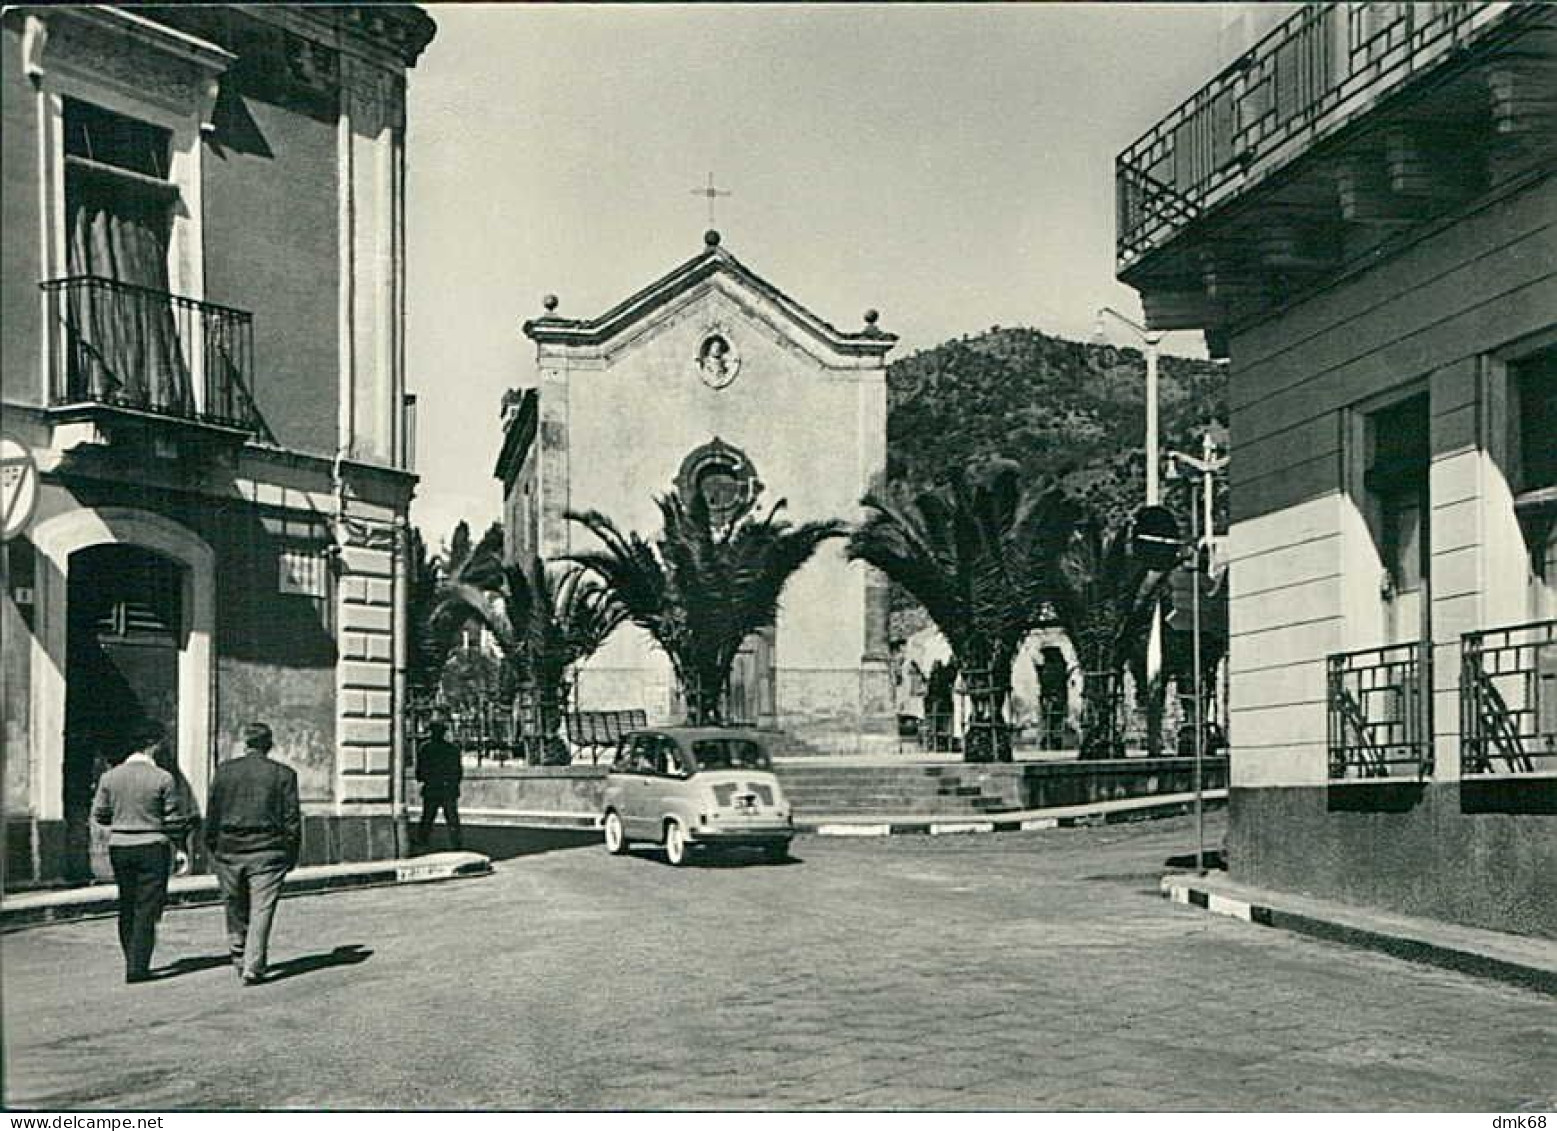 NICOLOSI ( CATANIA ) PIAZZA SAN FRANCESCO DA PAOLA - 1960s (20577) - Catania